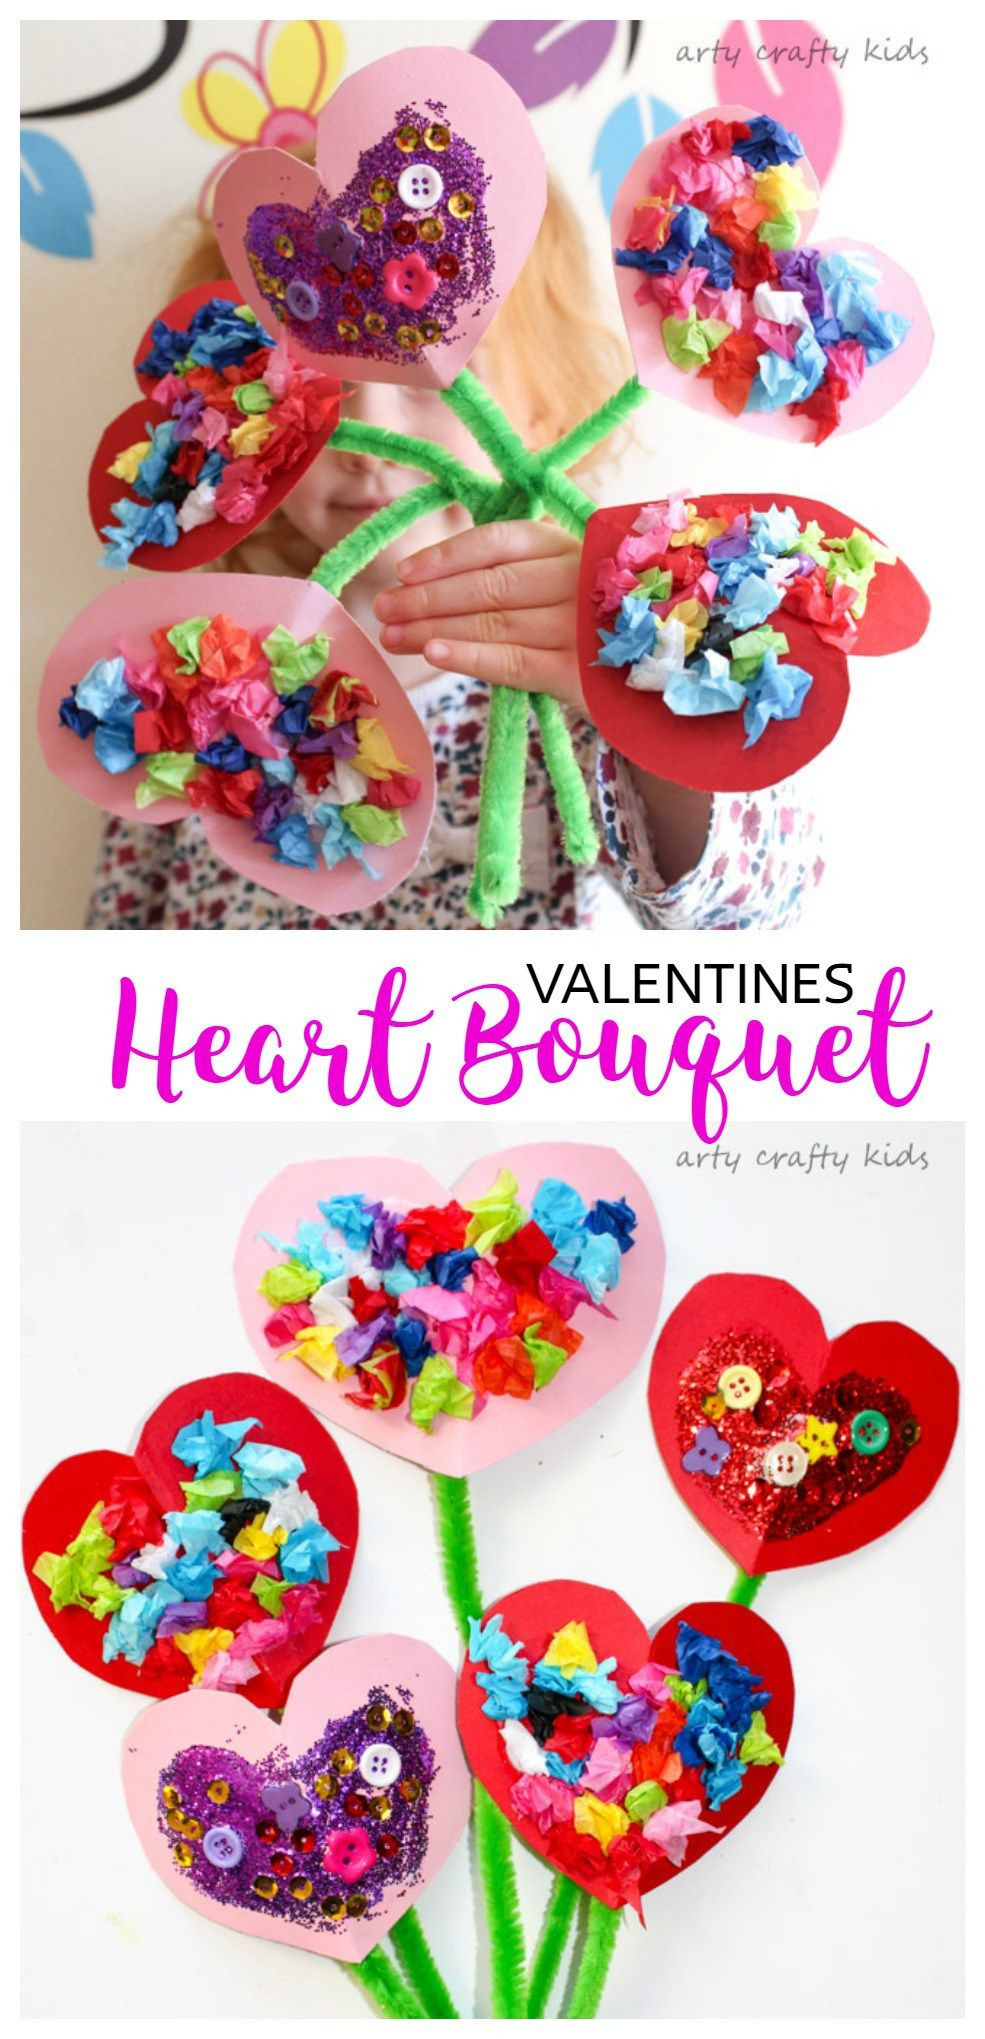 Valentine Craft Idea For Preschool
 Toddler Valentines Heart Bouquet